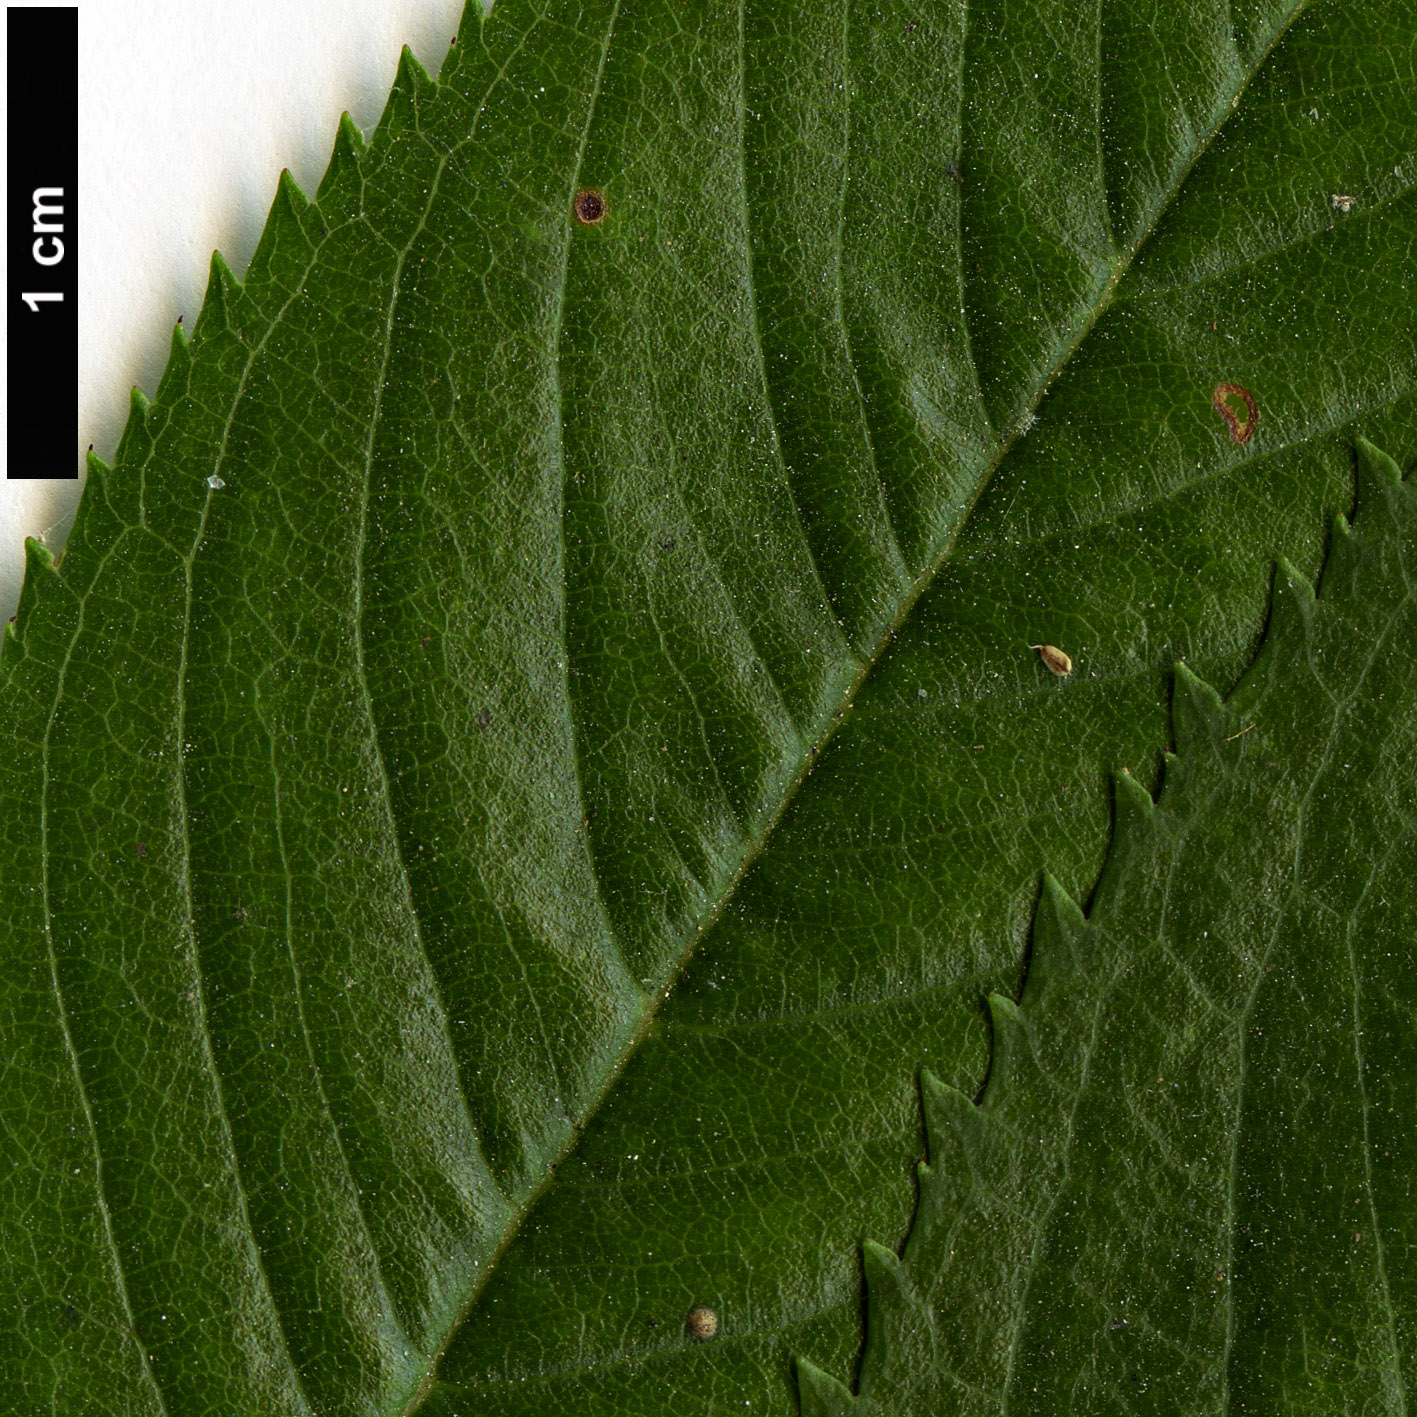 High resolution image: Family: Rosaceae - Genus: Prunus - Taxon: subhirtella